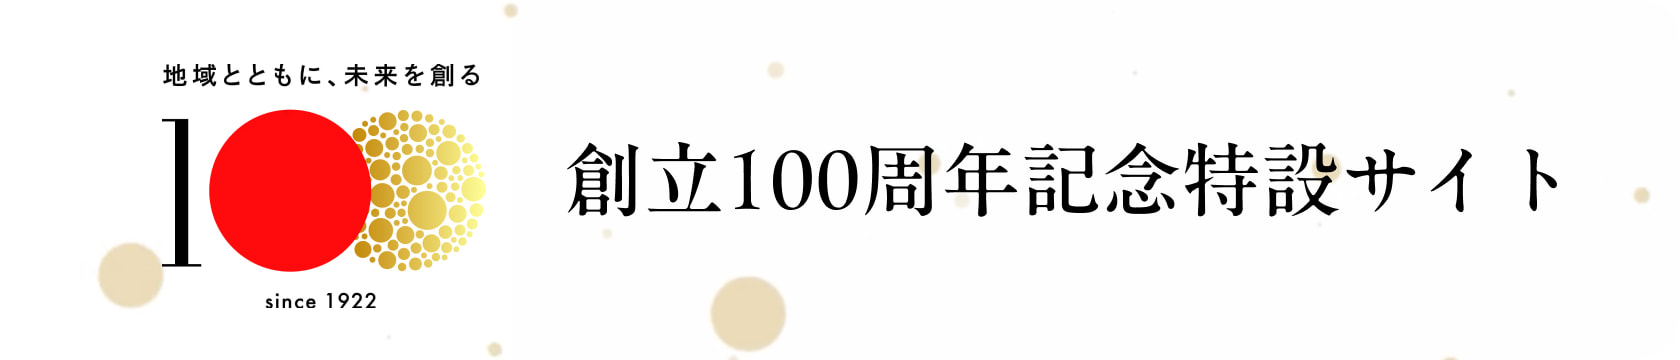 創立100周年記念特設サイト